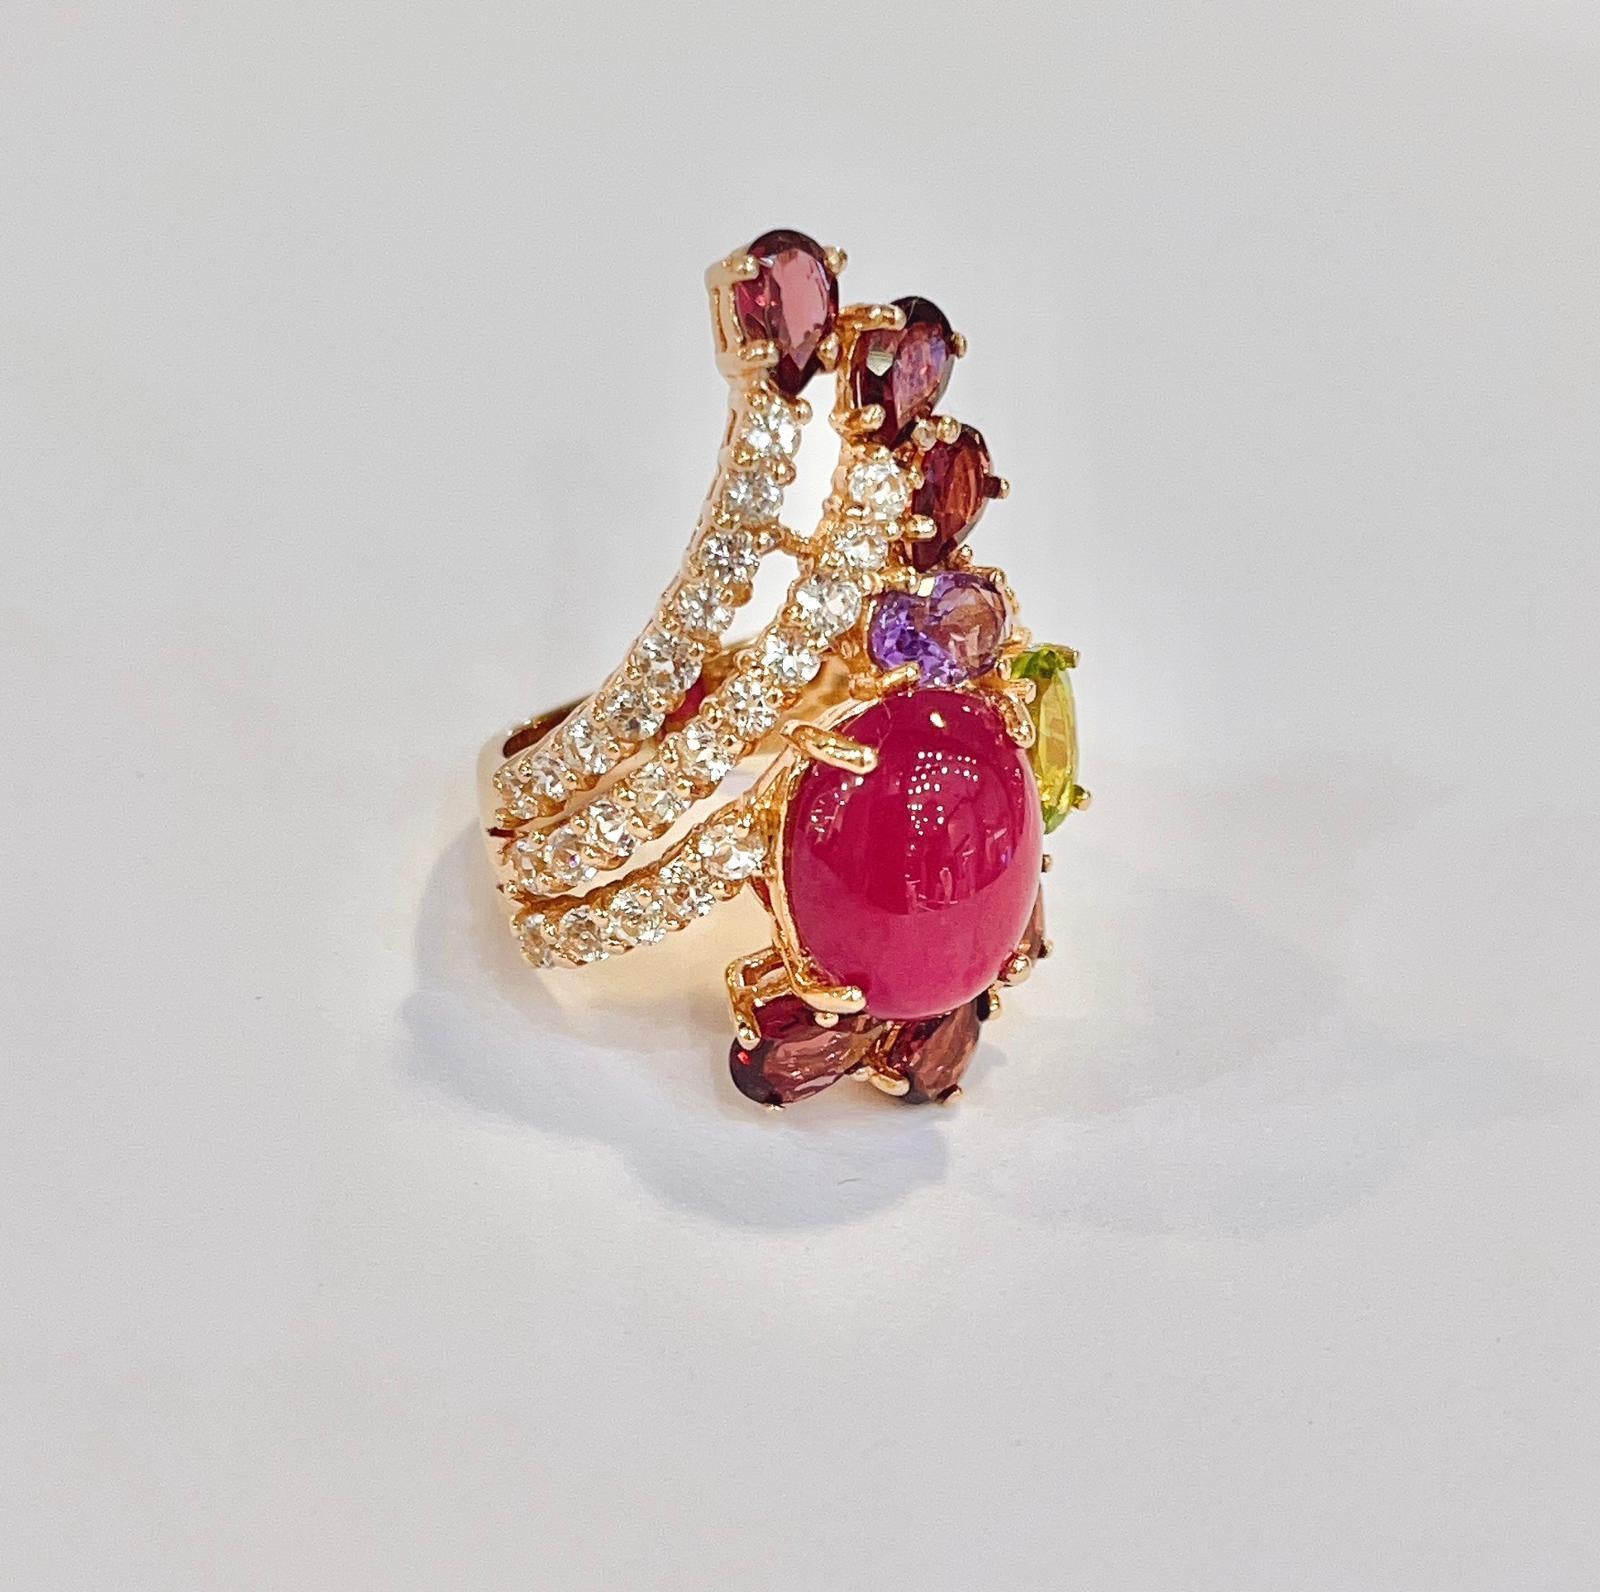 Bochic “Capri” Ruby & Multi Color Gem Cocktail Ring Set in 22k Gold & Silver 3